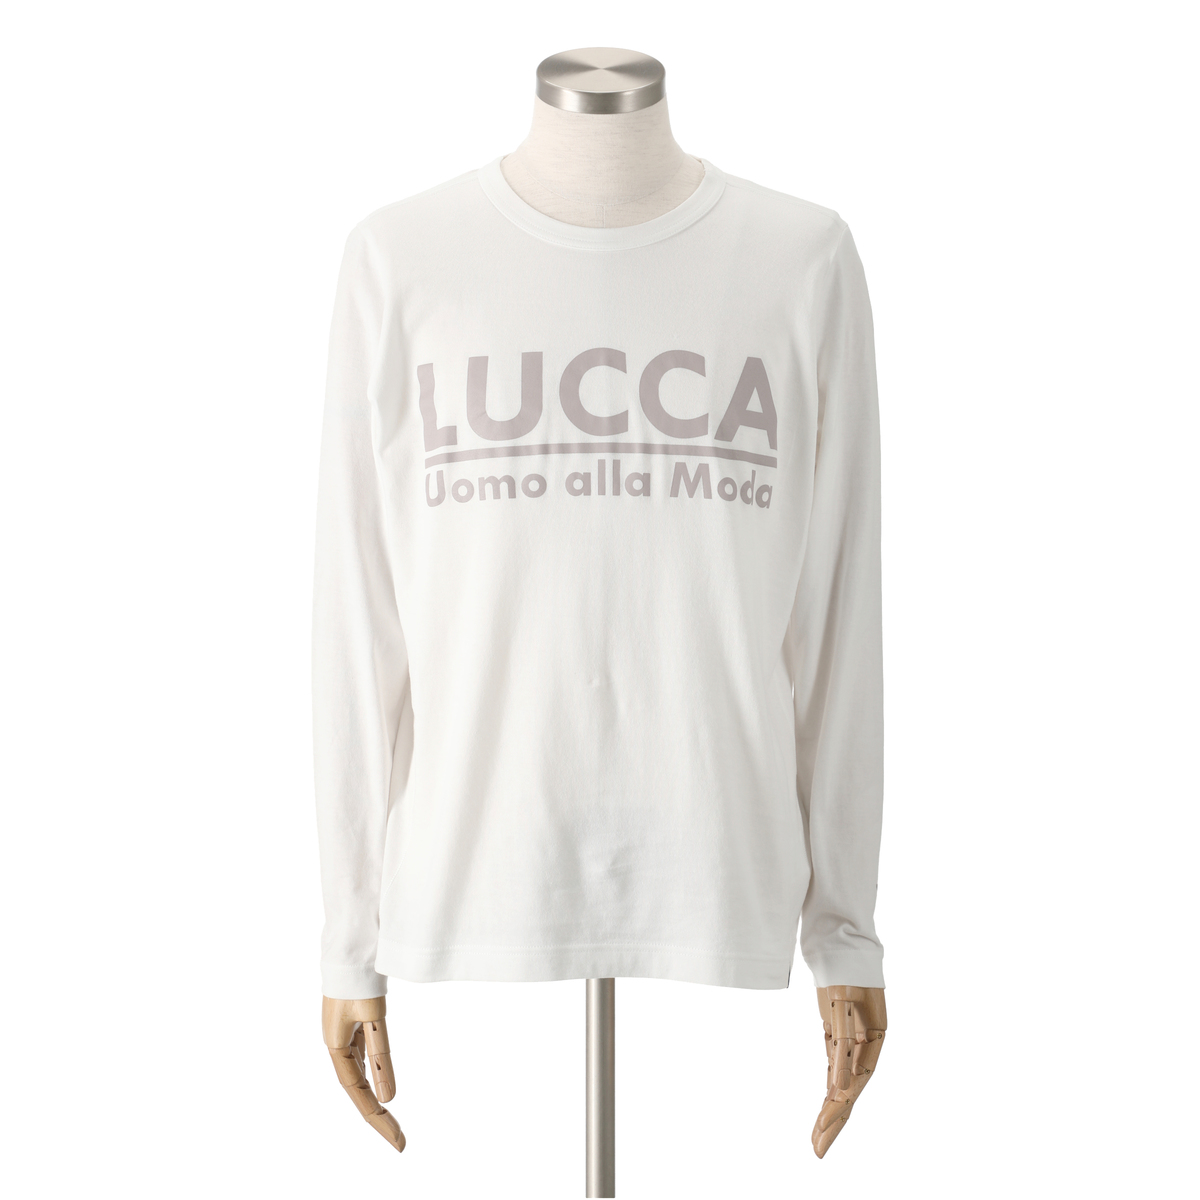 ＜QVCジャパン＞ Lucca Uomo alla moda ロングスリーブプリントTシャツ ＜サイズ＞ M ＜カラー＞ ホワイト